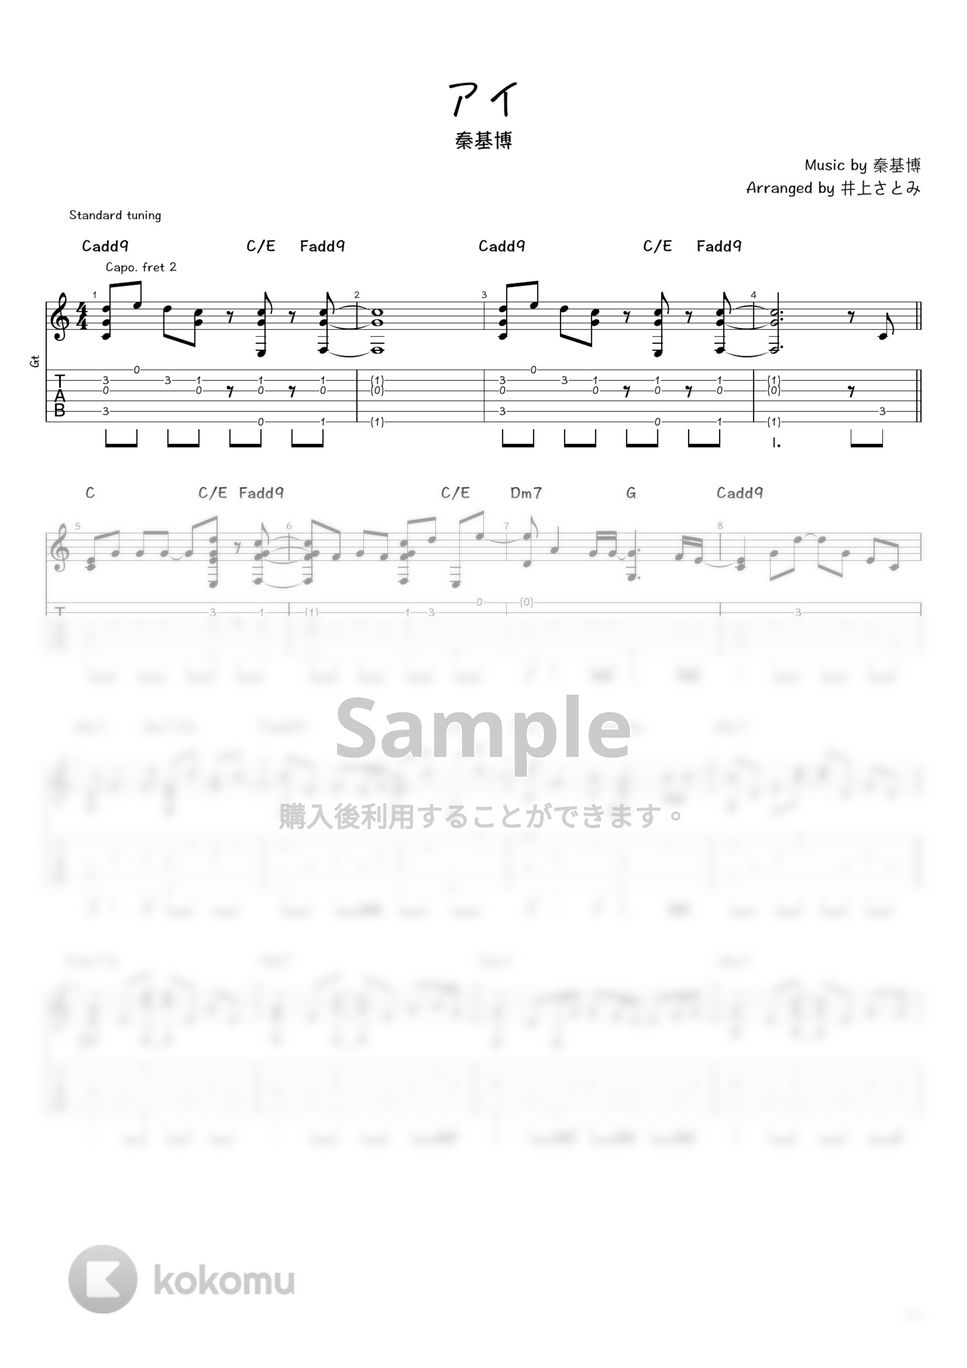 秦基博 - アイ (ソロギター / タブ譜) by 井上さとみ